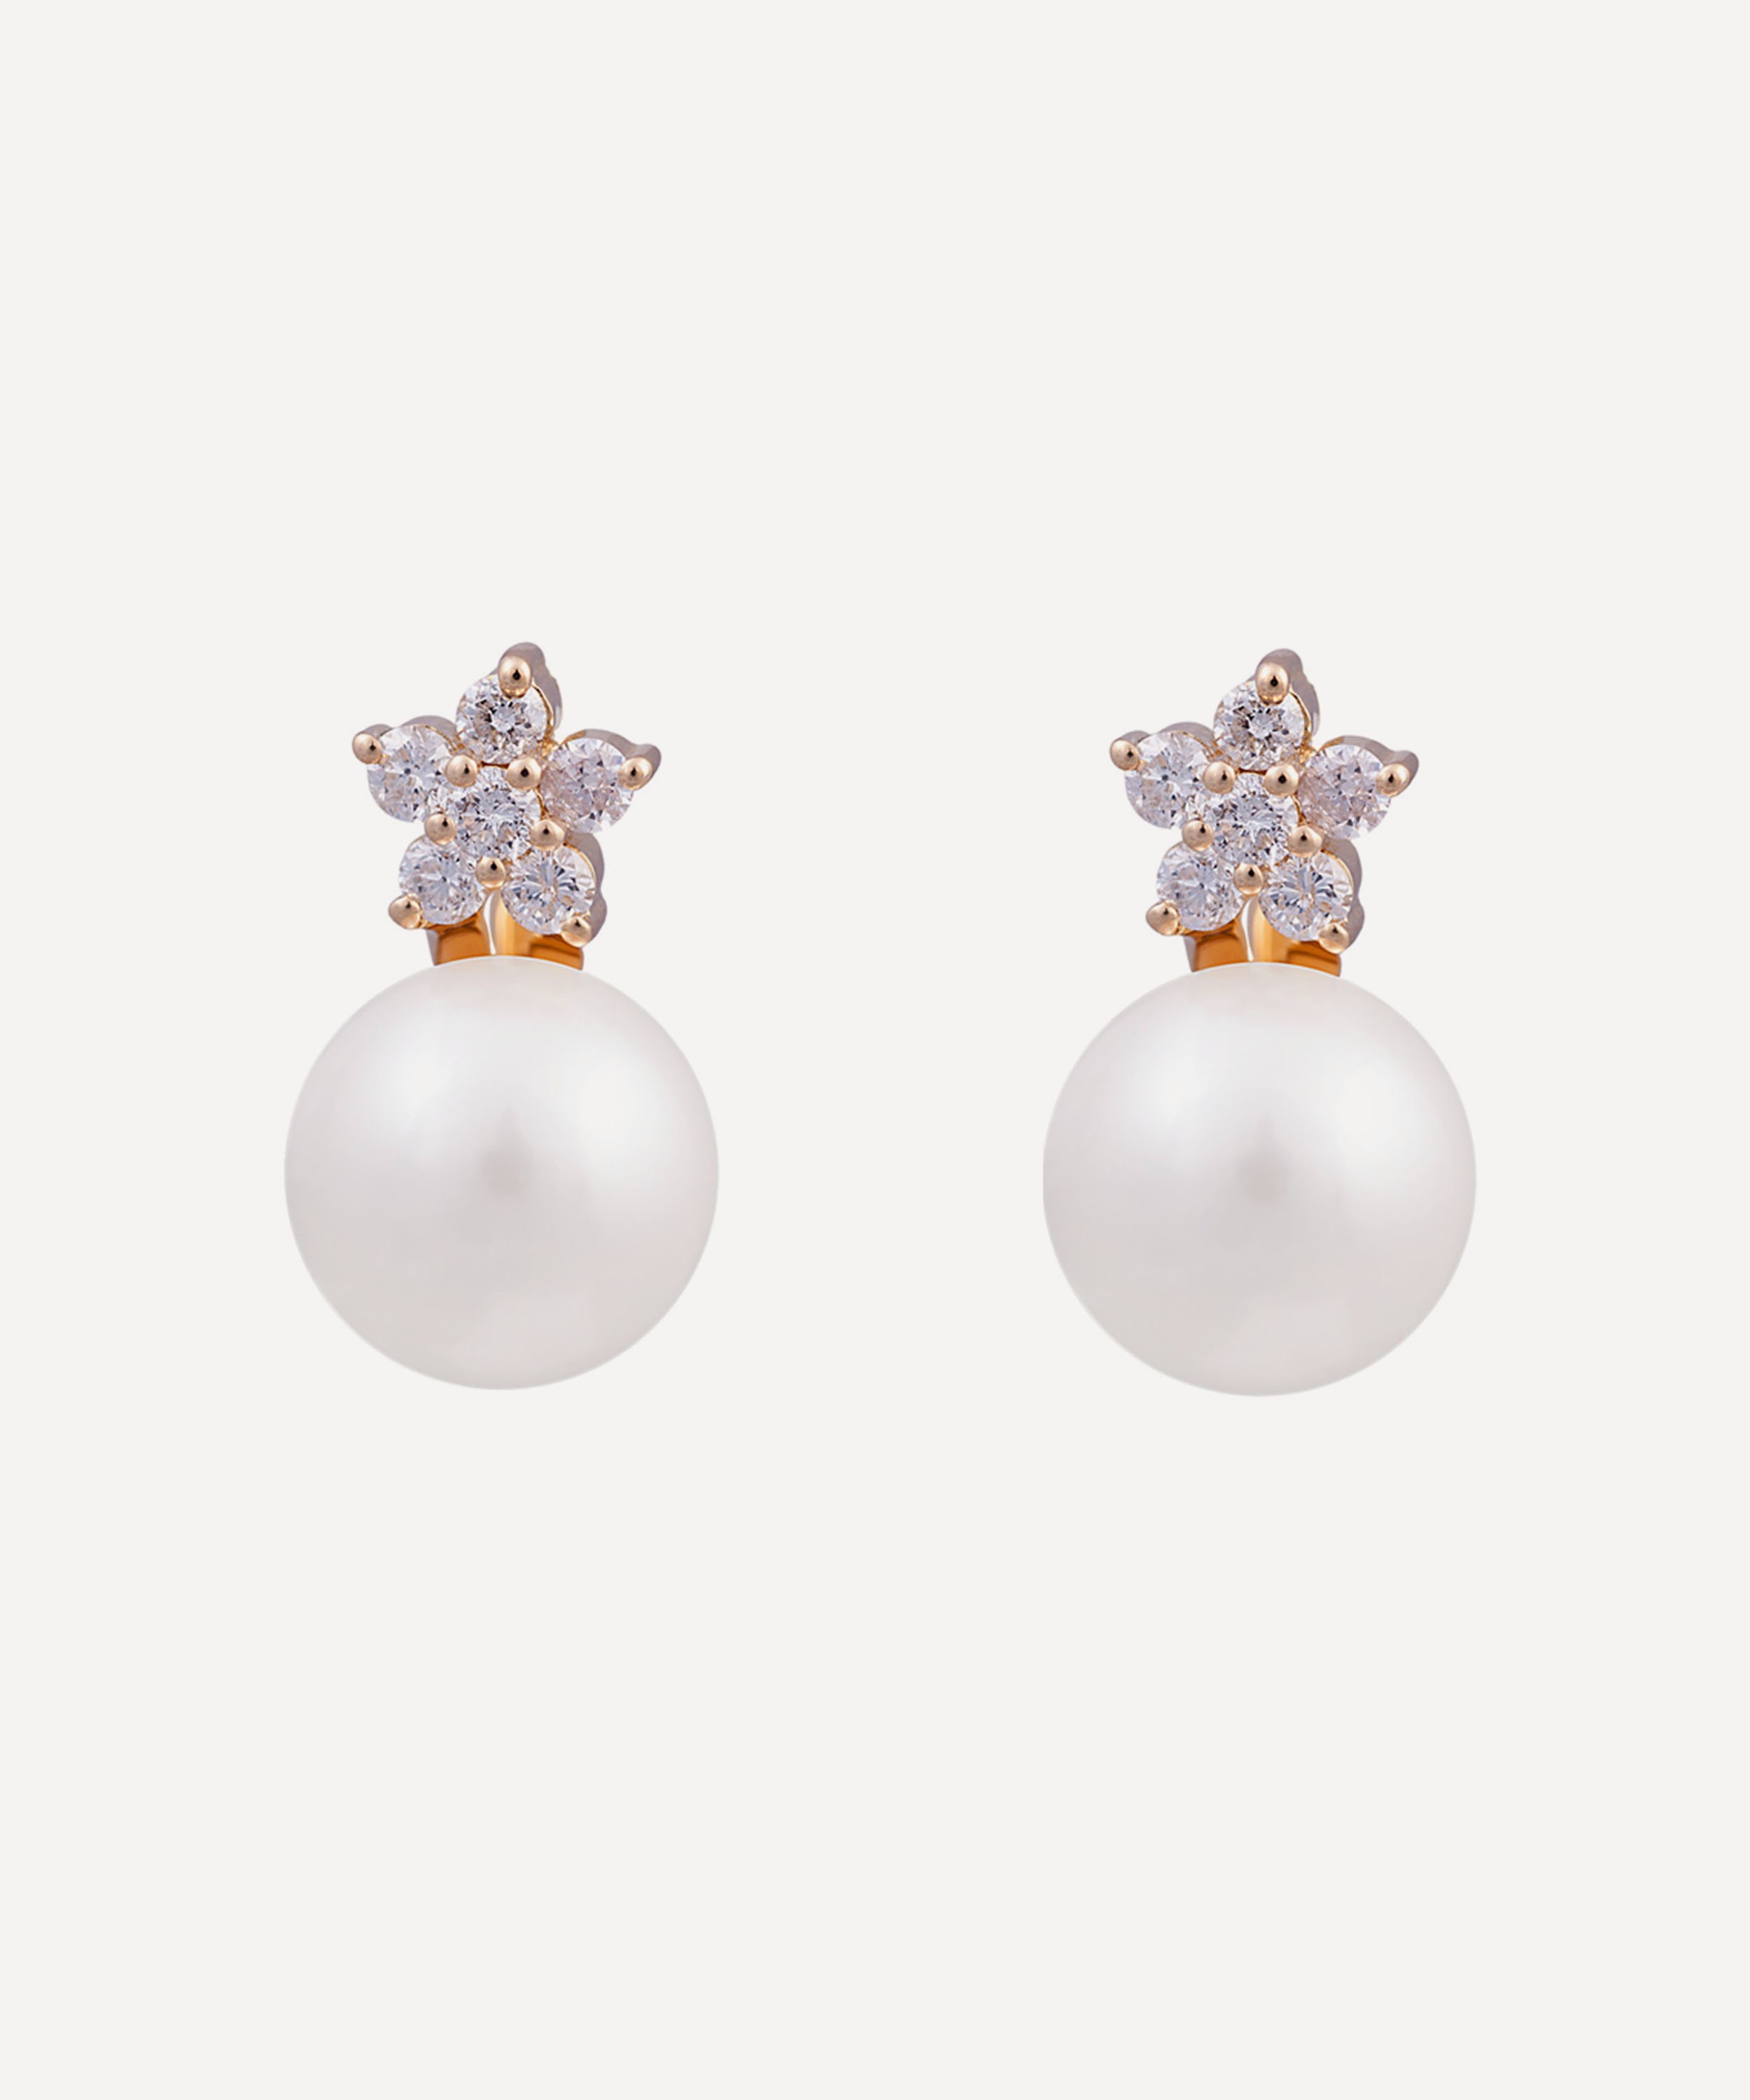 Kojis - Large Diamond Star and Pearl Drop Earrings